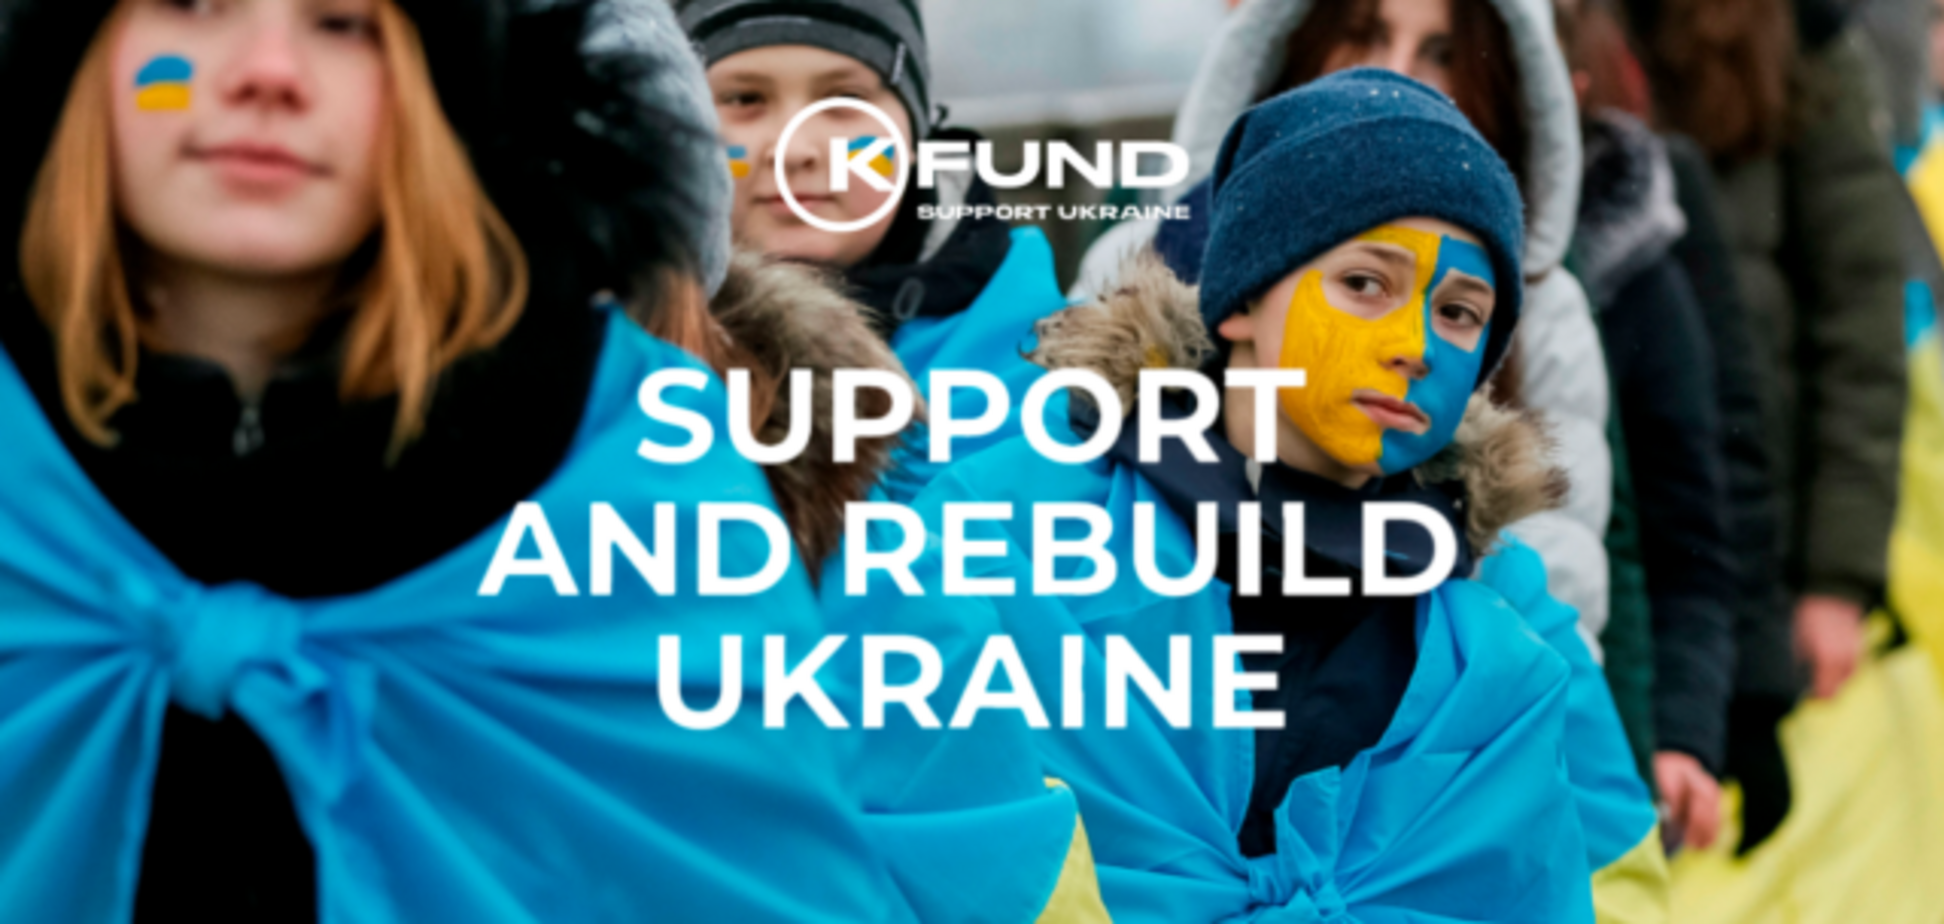 Фонд K.FUND Василия Хмельницкого запускает гуманитарное направление